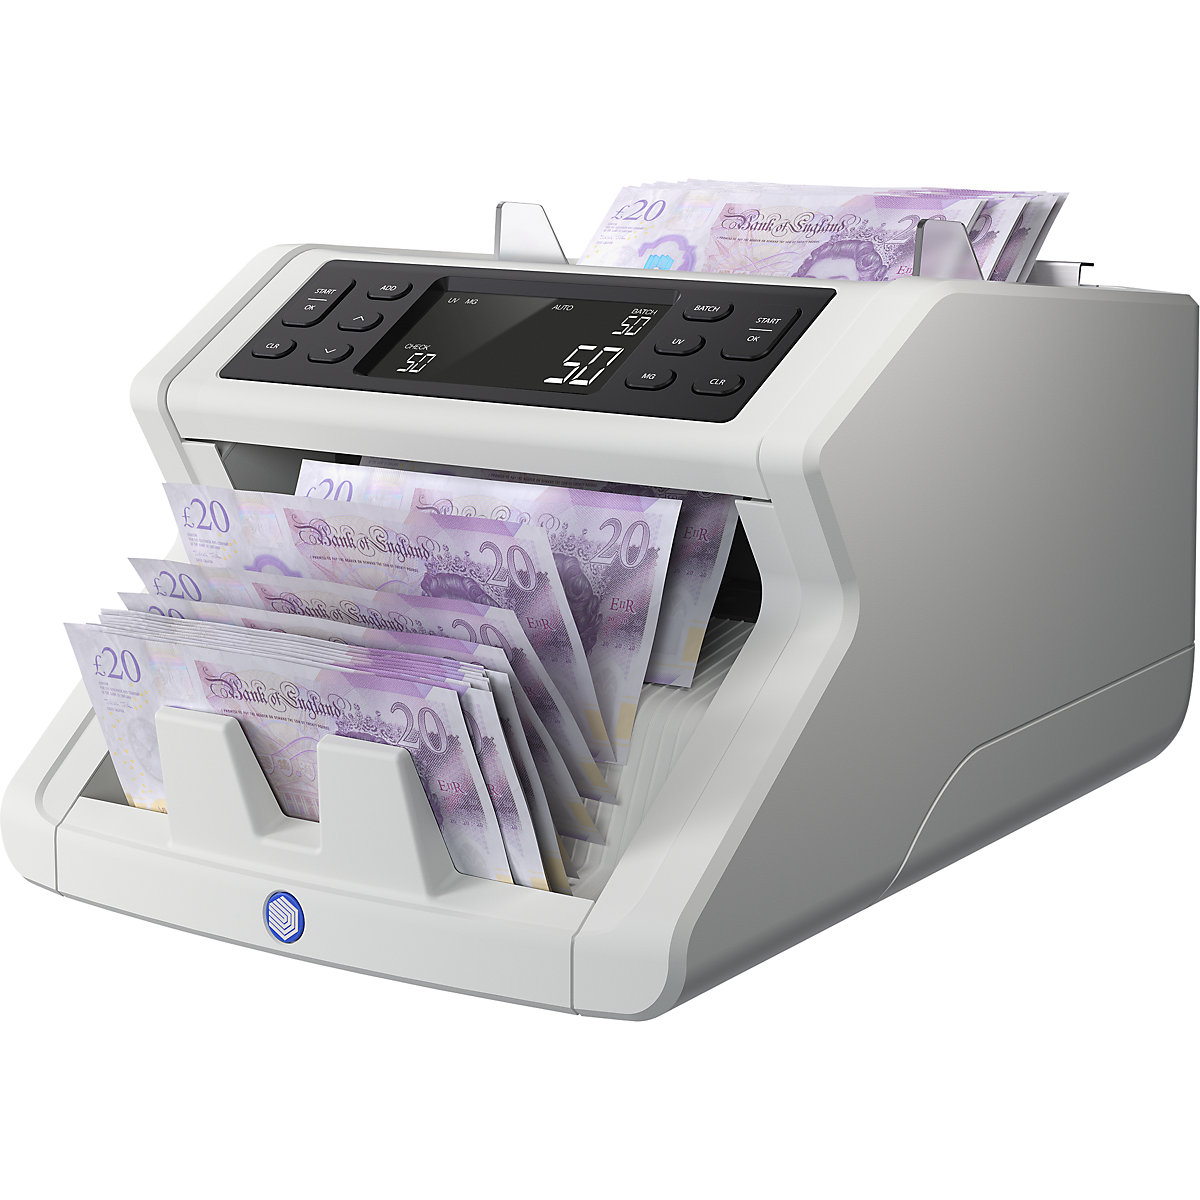 Máquina de contar dinheiro para contagem organizada – Safescan (Imagem do produto 15)-14